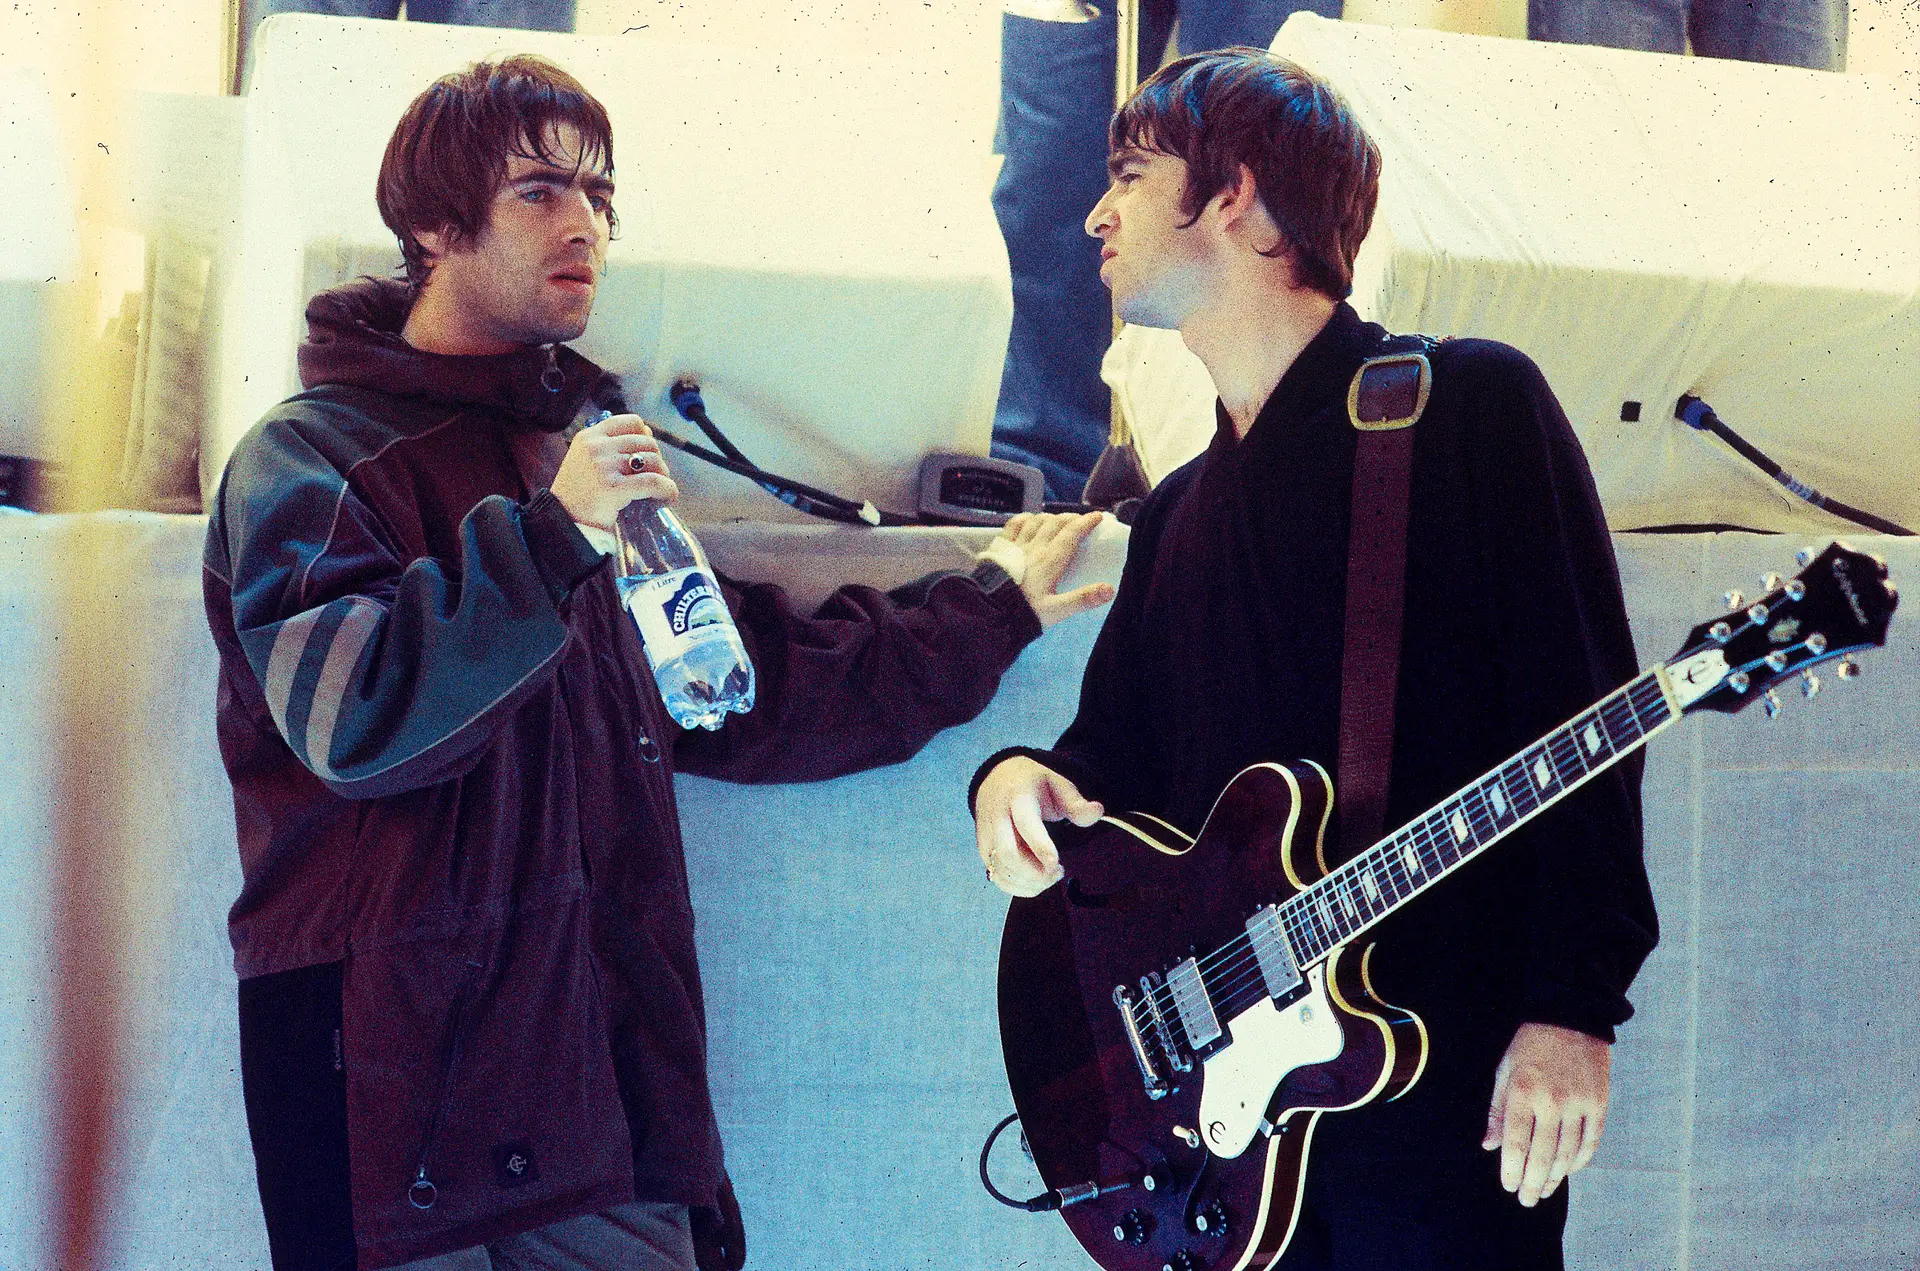 "Eles voltaram?": Oasis publicam mensagem enigmática e deixam fãs em êxtase com possível regresso